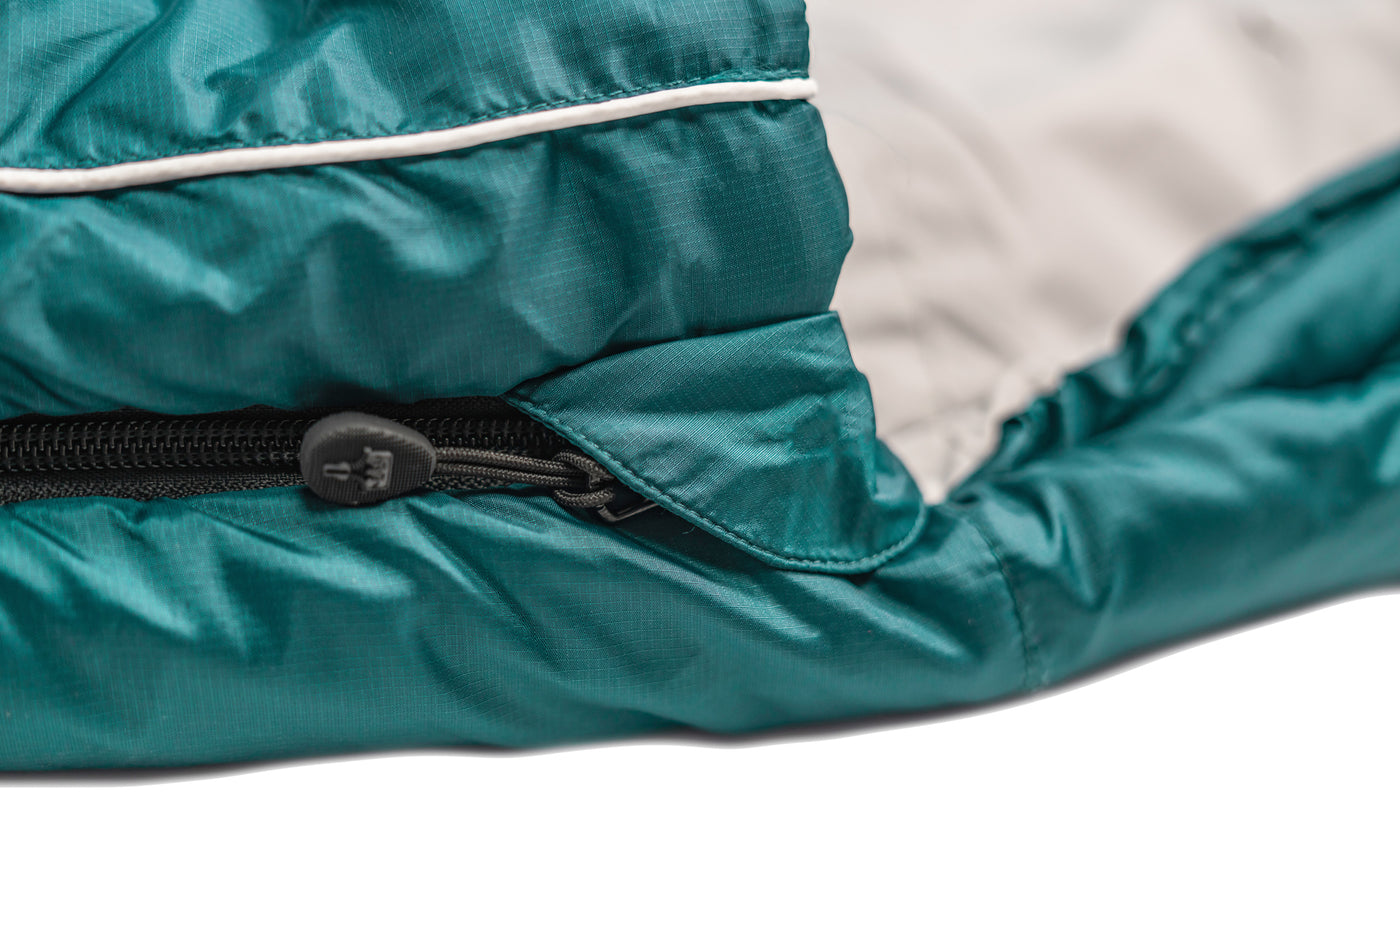 Grüezi bag Deckenschlafsack Biopod Wolle Goas Comfort - Reißverschlussabdeckung